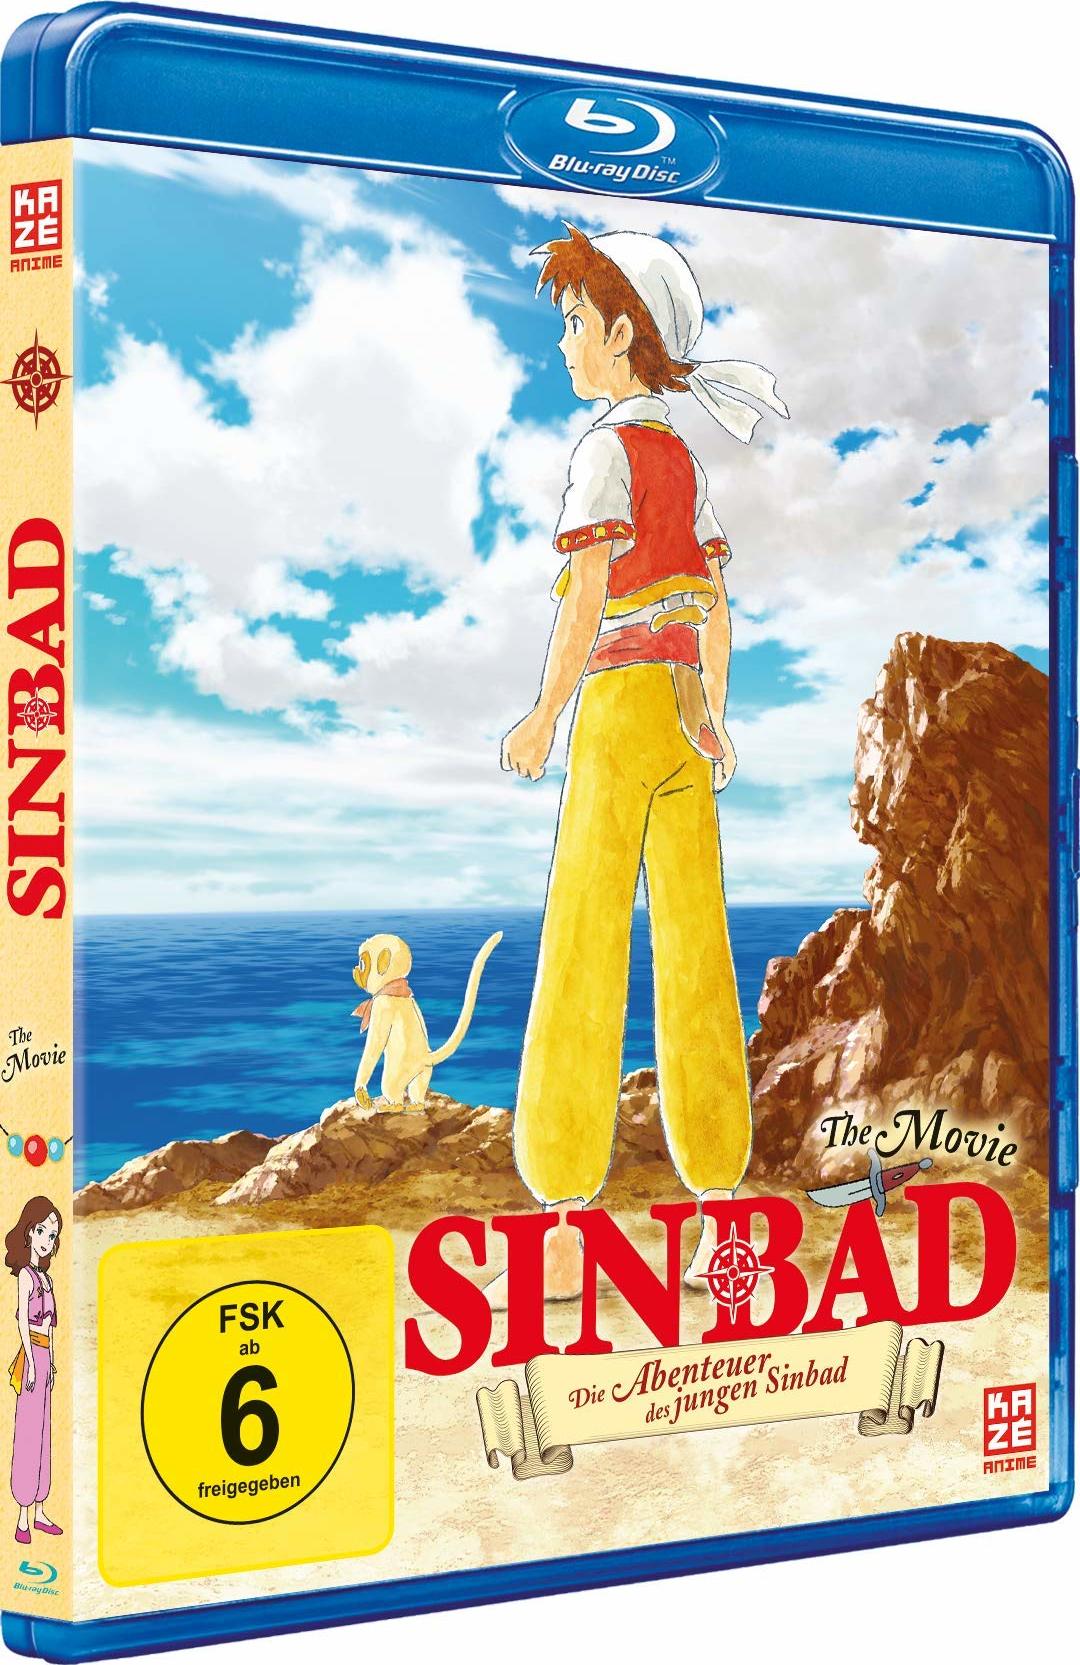 Sinbad Blu-ray (Die Abenteuer des jungen Sinbad) (Germany)